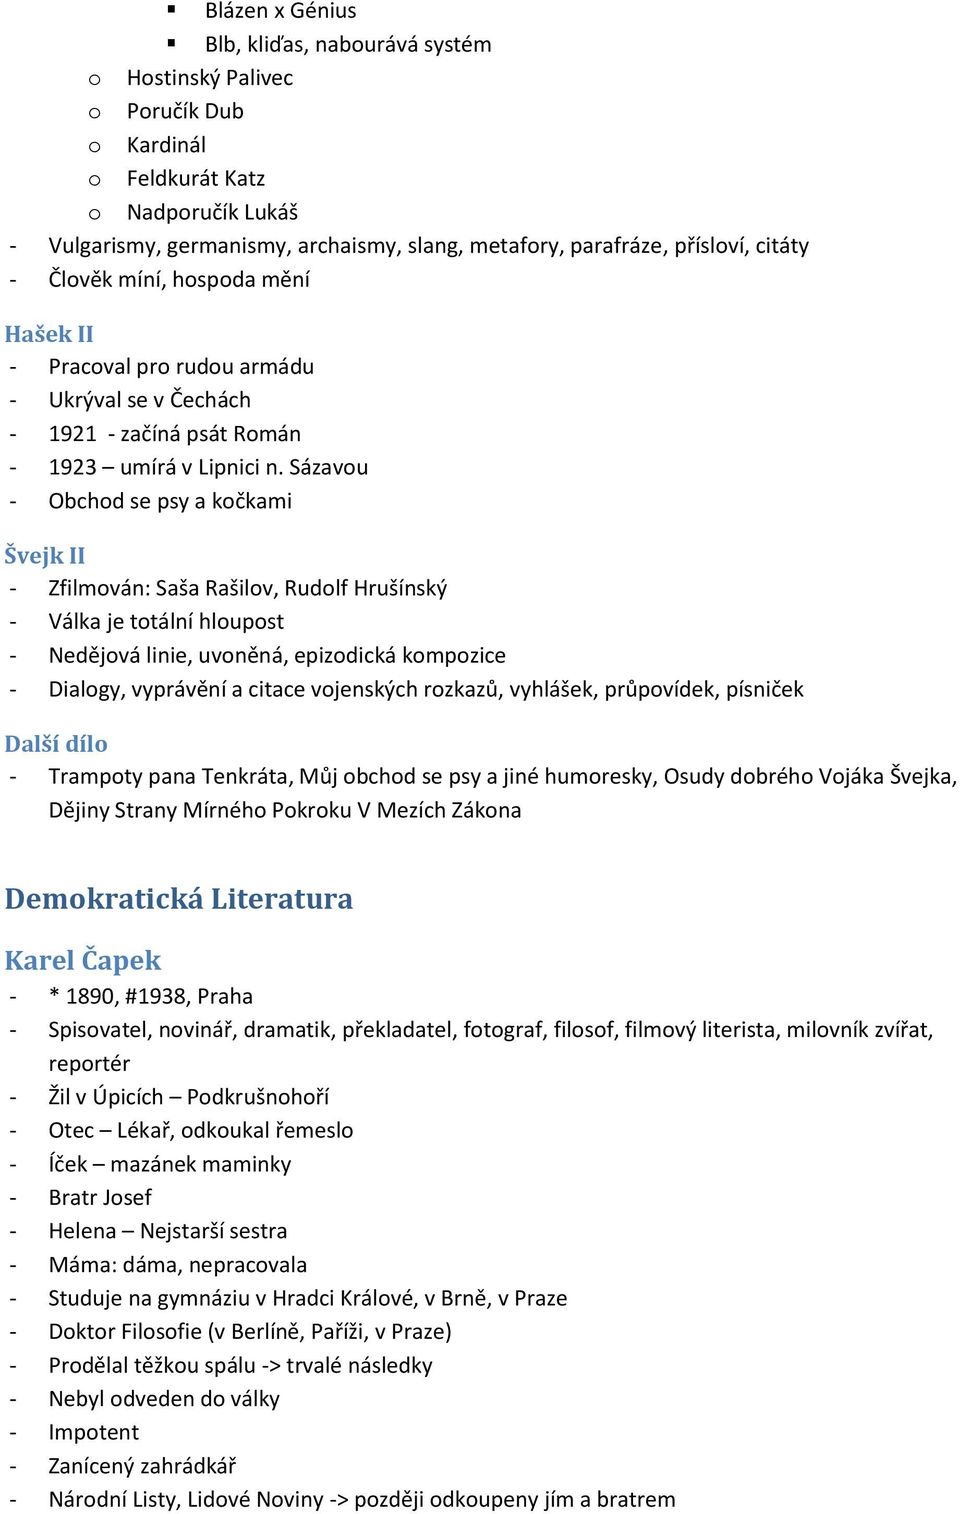 Č eská literáturu 1. pol 20. stol - PDF Stažení zdarma